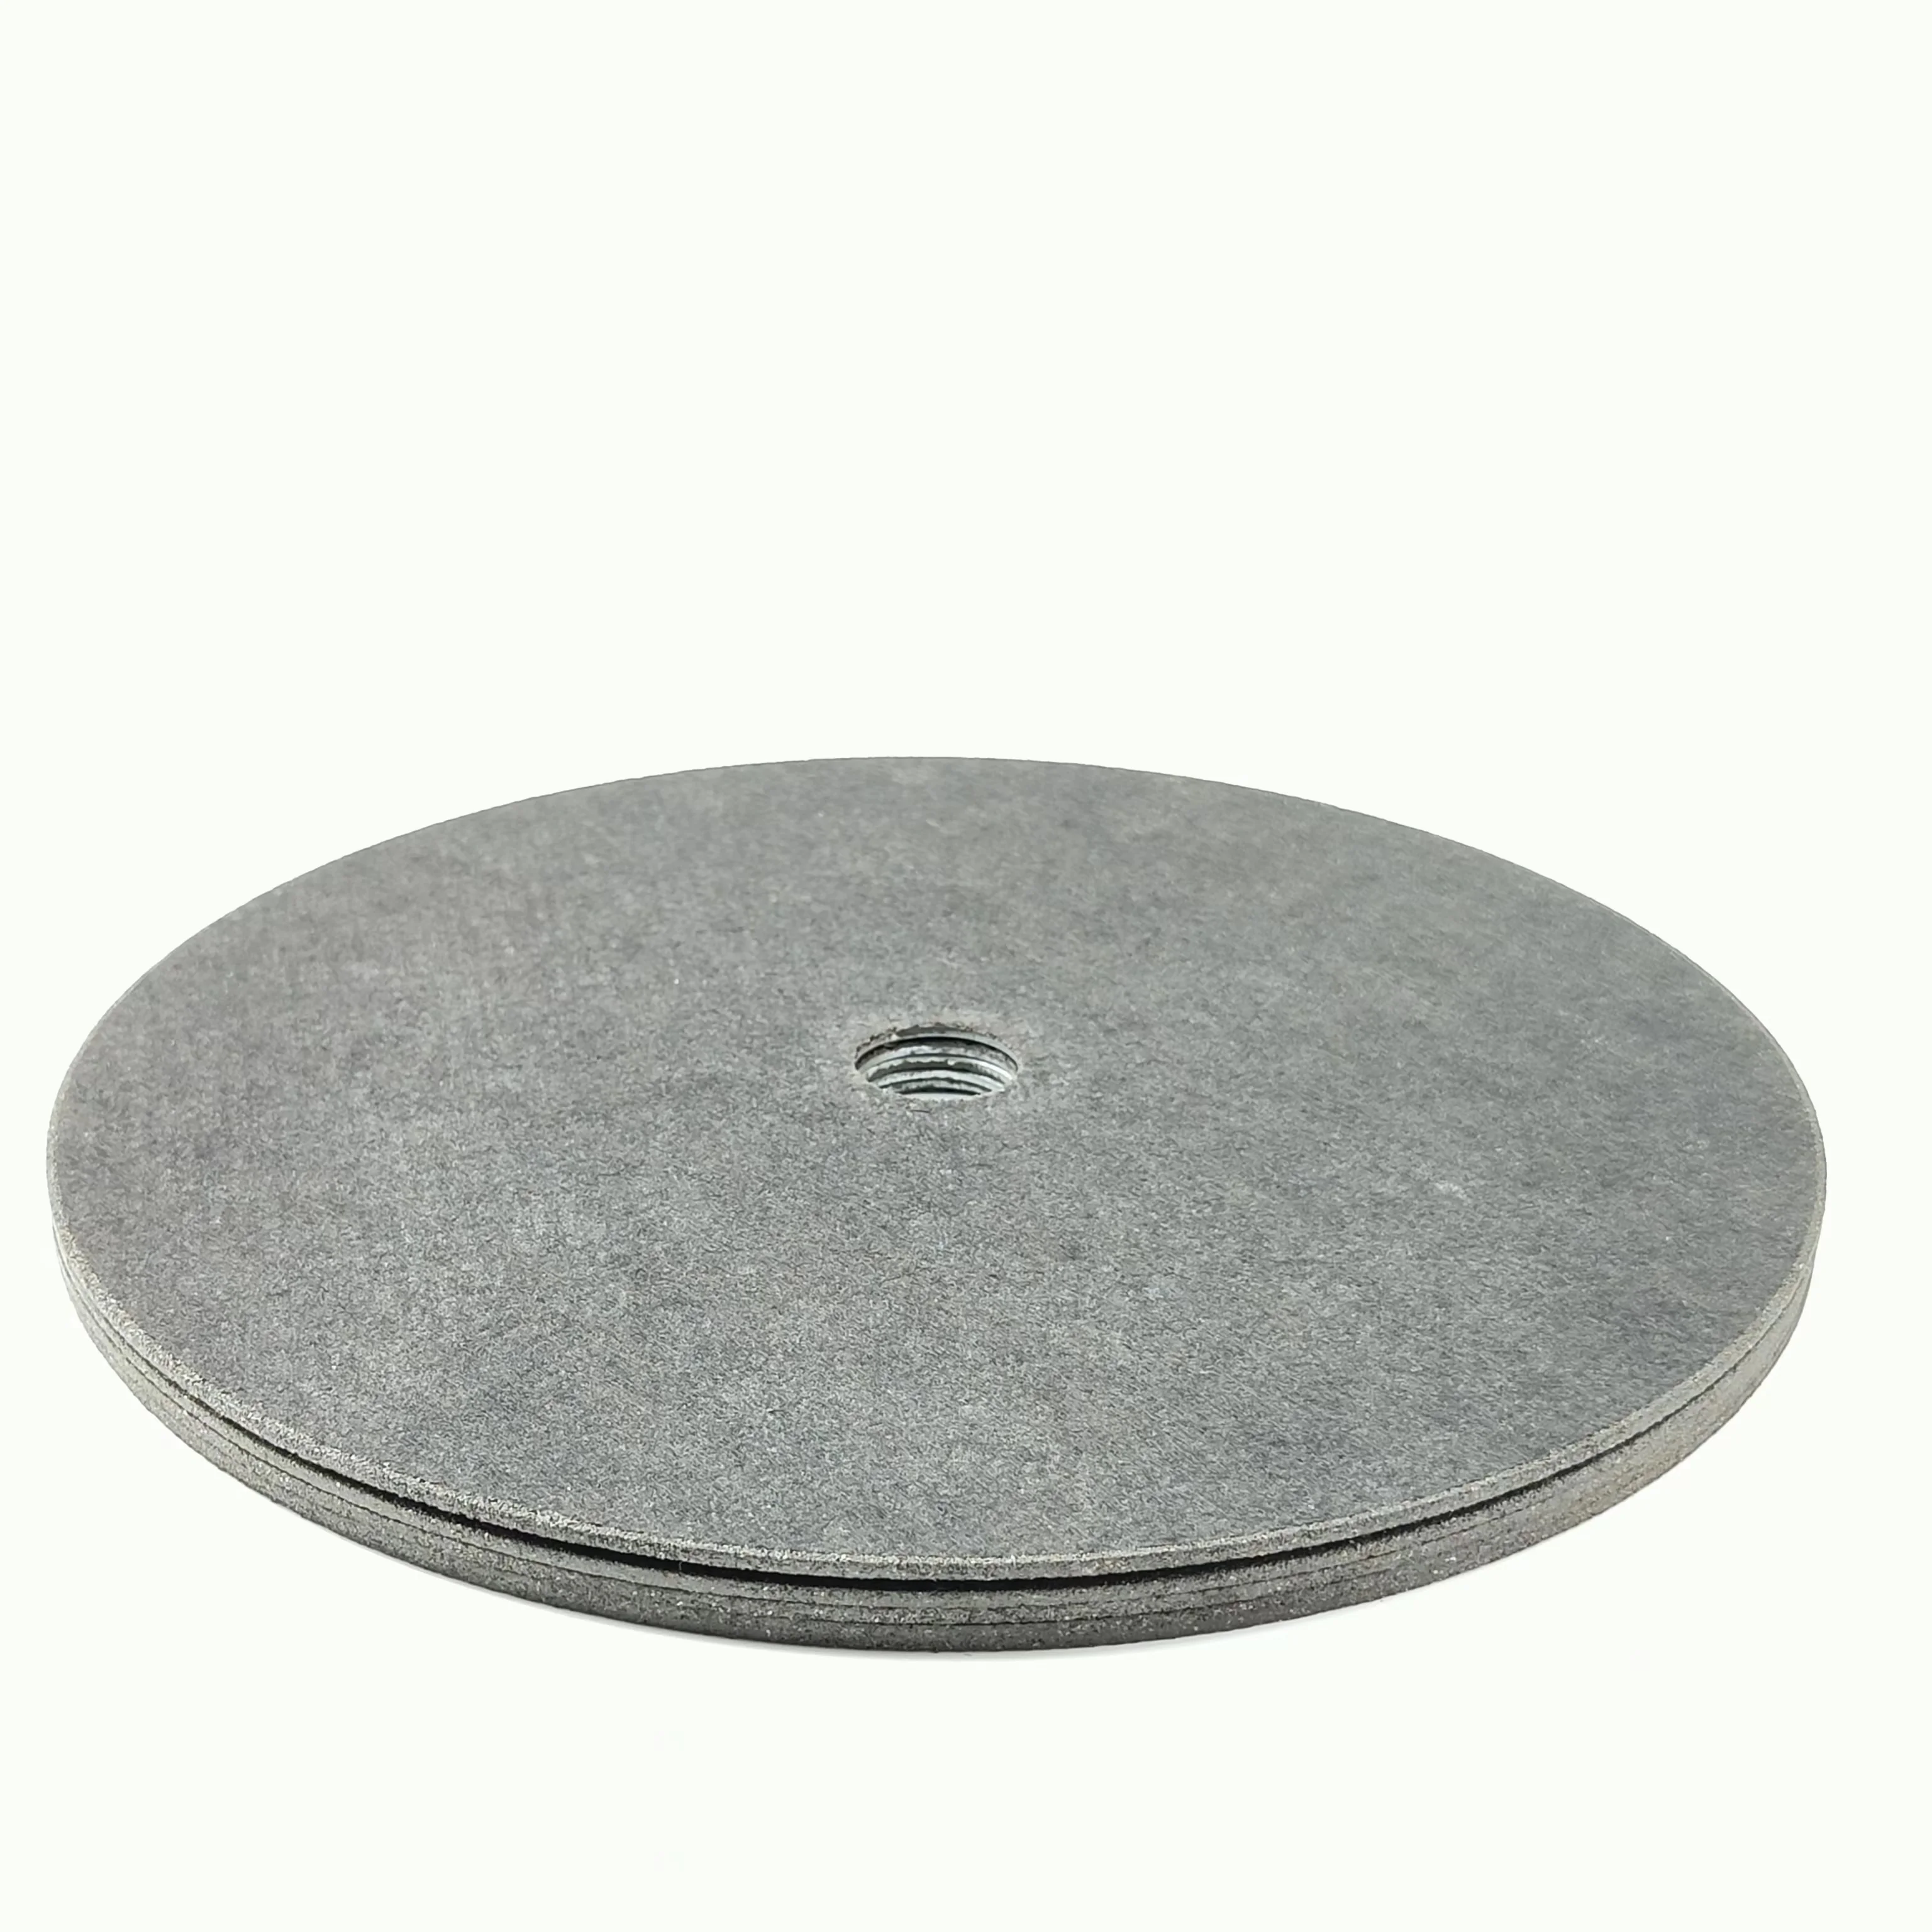 Абразивный диск, 9 дюймов/230 мм, нержавеющая сталь